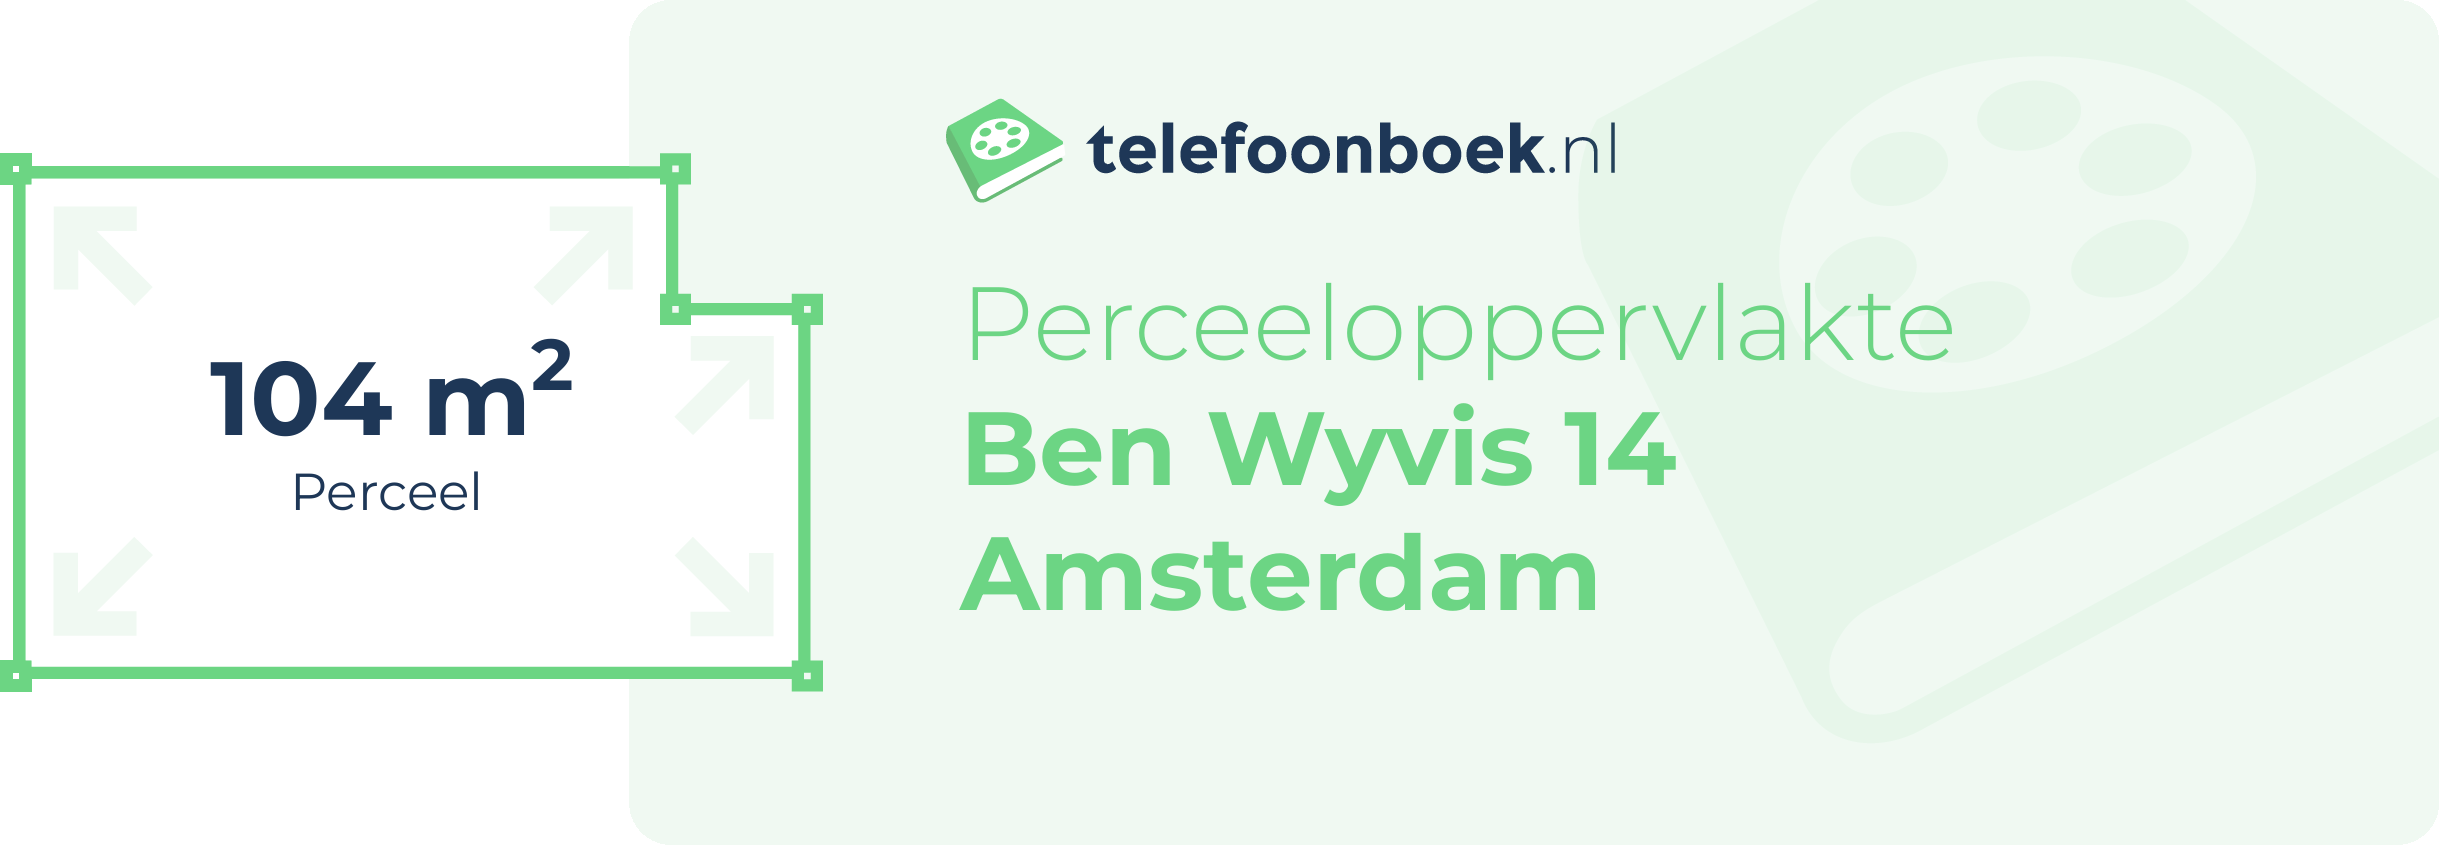 Perceeloppervlakte Ben Wyvis 14 Amsterdam